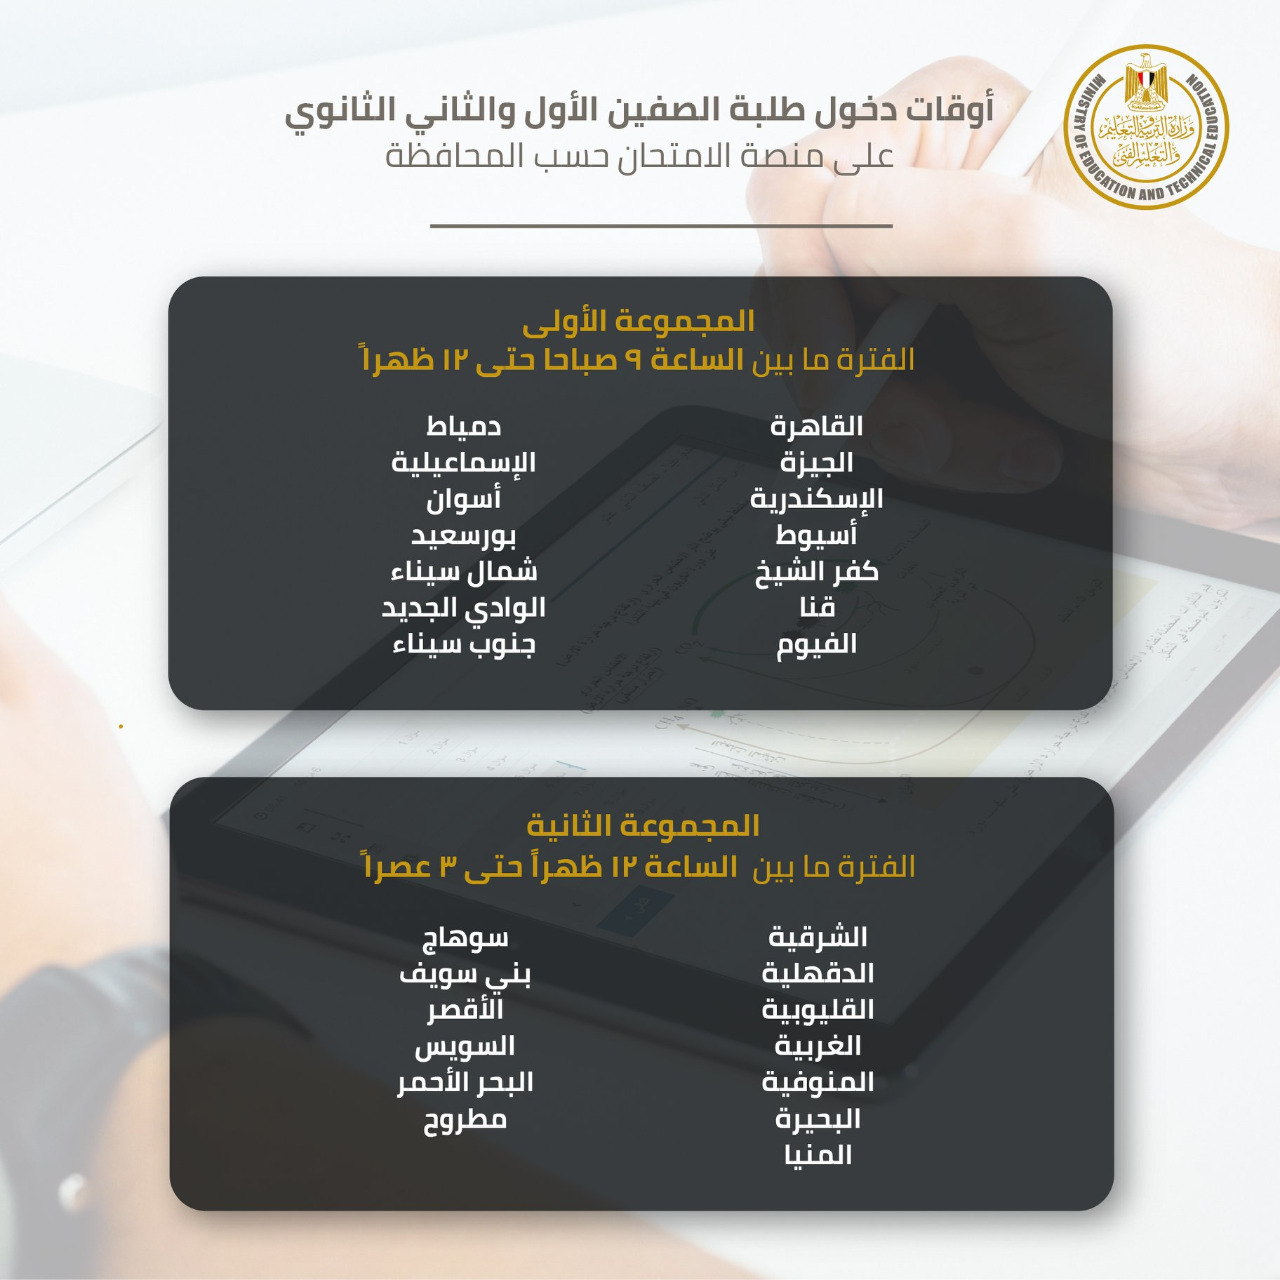 وزير التربية والتعليم يعلن رسمياً جدول امتحانات أولي وثانية ثانوي والفترات الزمنية لكل محافظة 2